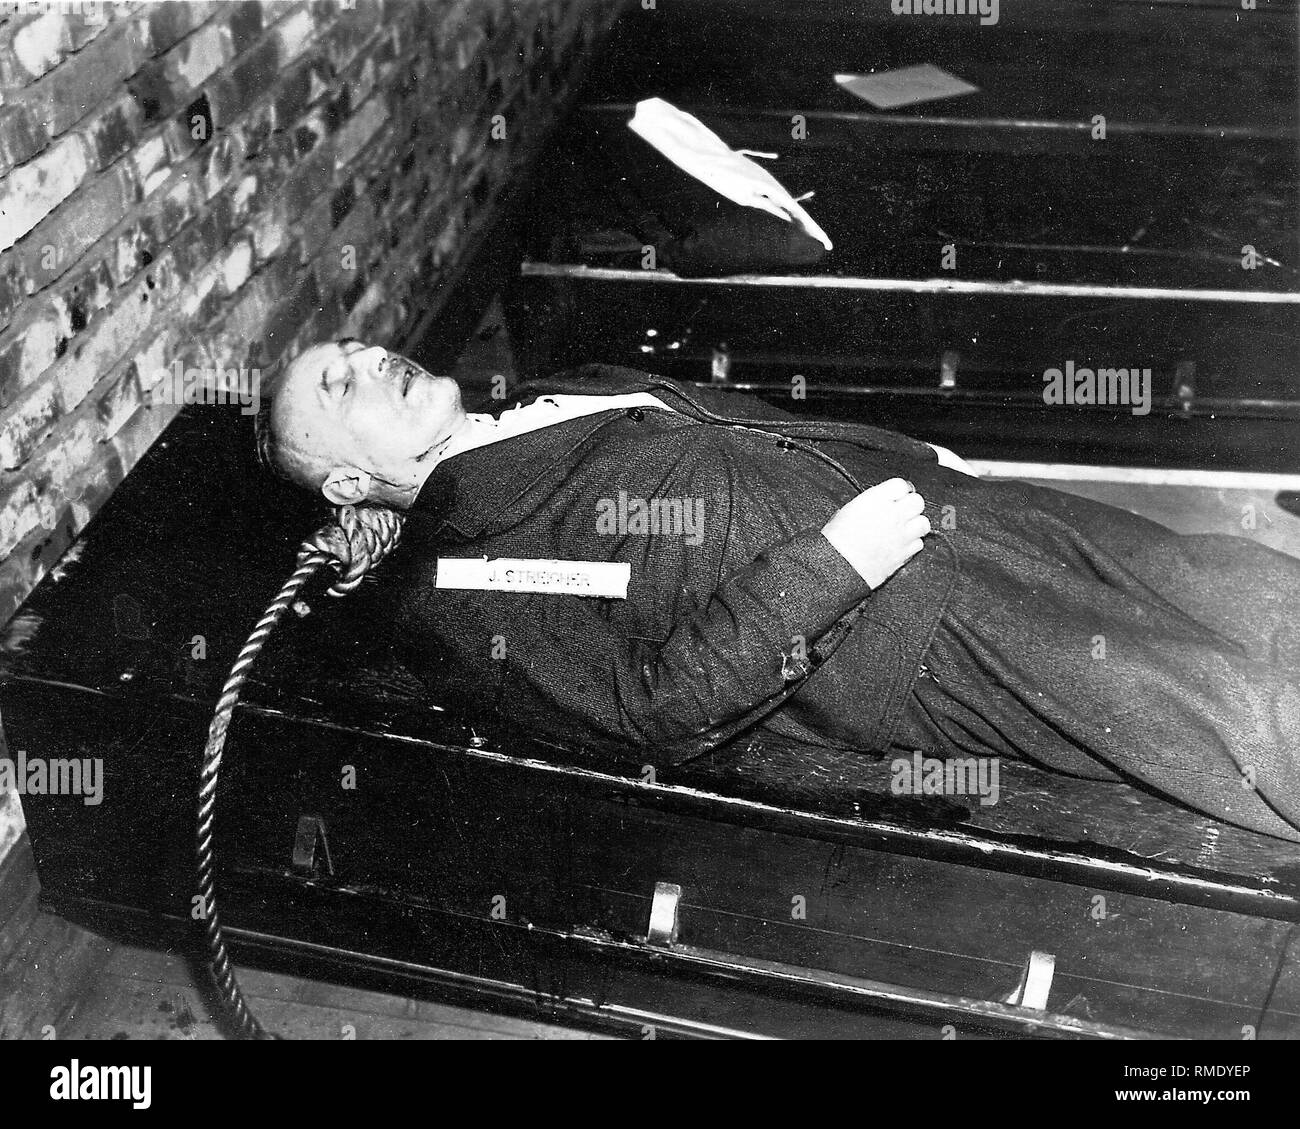 Gauleiter Julius Streicher after his execution by hanging on October 16, 1946 in Nuremberg (Nuremberg trials). Stock Photo